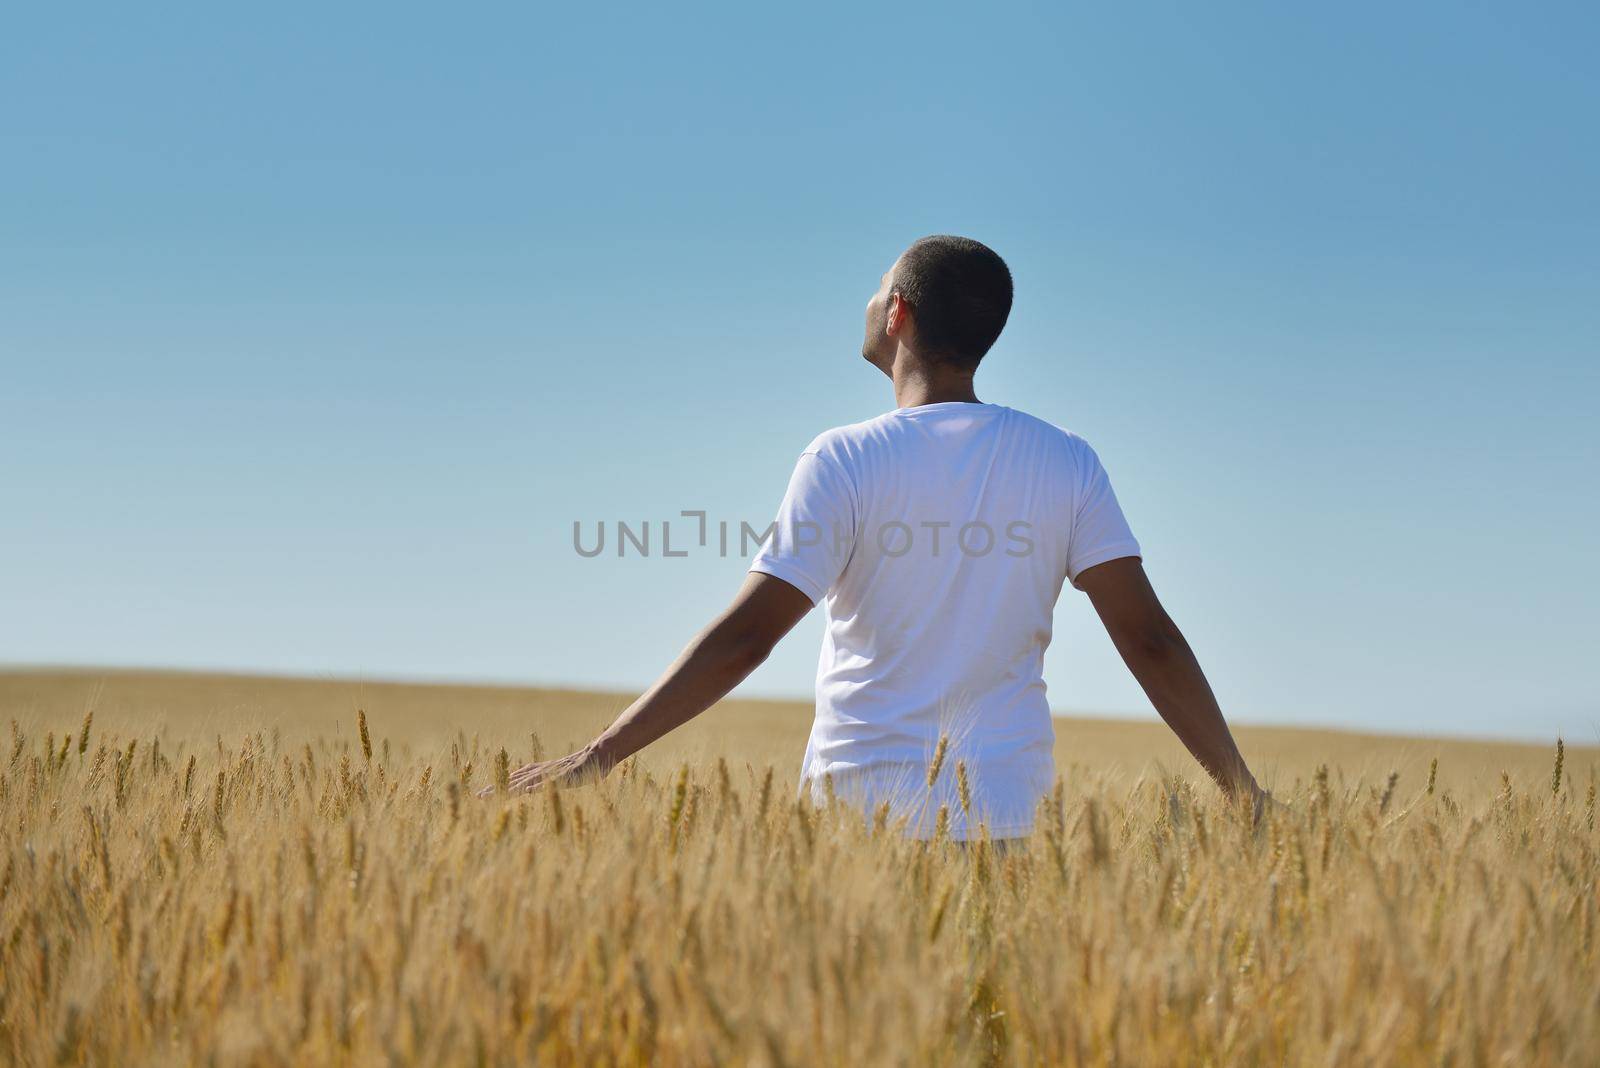 man in wheat field by dotshock